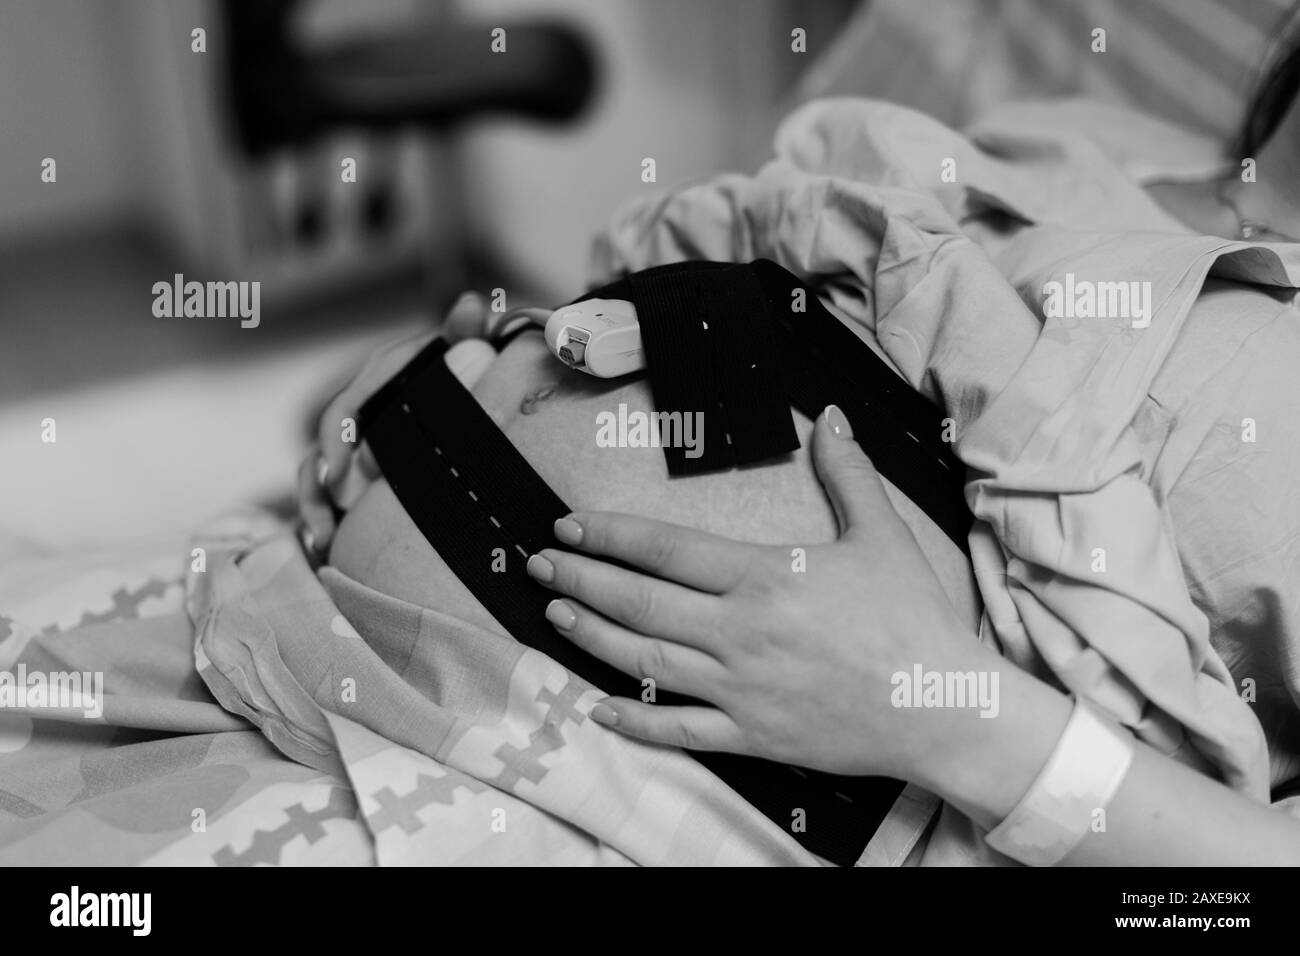 Schwangere Frau im Krankenhaus mit Kardiotokographie-Glocke schwarz-weiß Foto Stockfoto